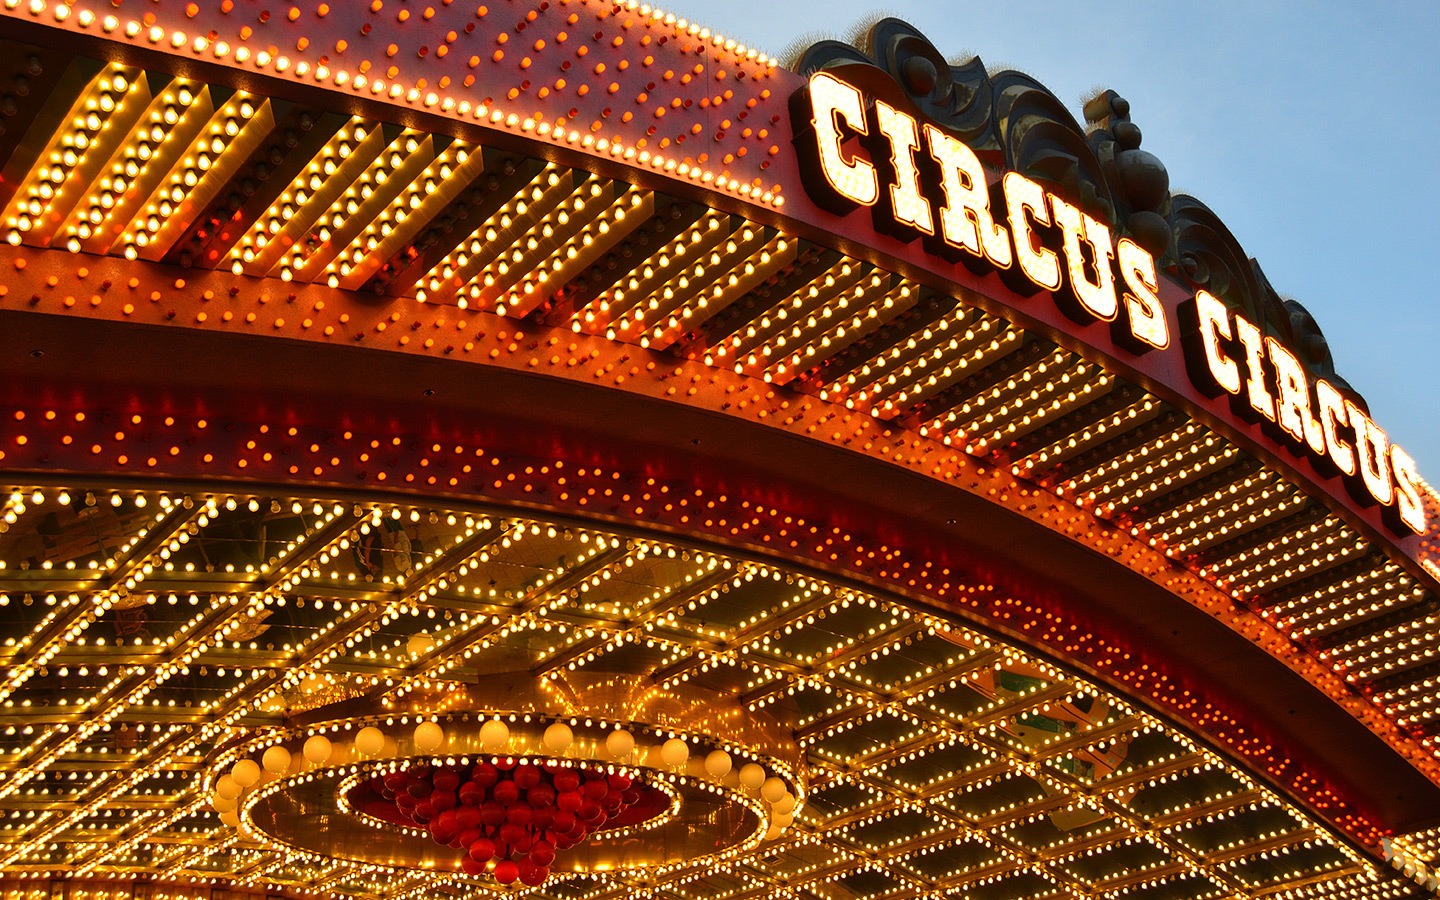 Circus Circus casino in Las Vegas